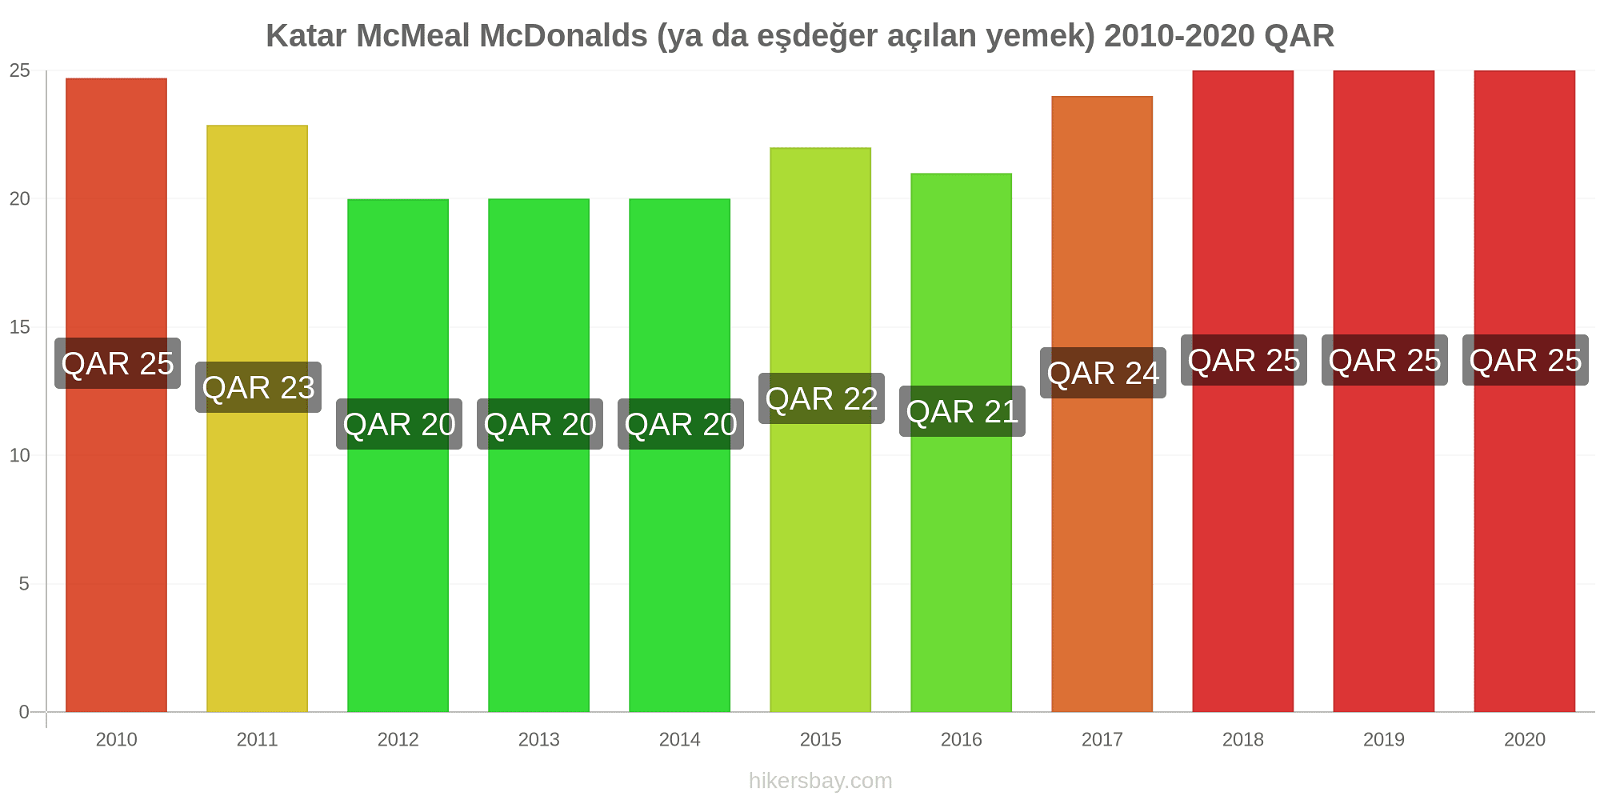 Katar fiyat değişiklikleri McMeal McDonalds (ya da eşdeğer açılan yemek) hikersbay.com